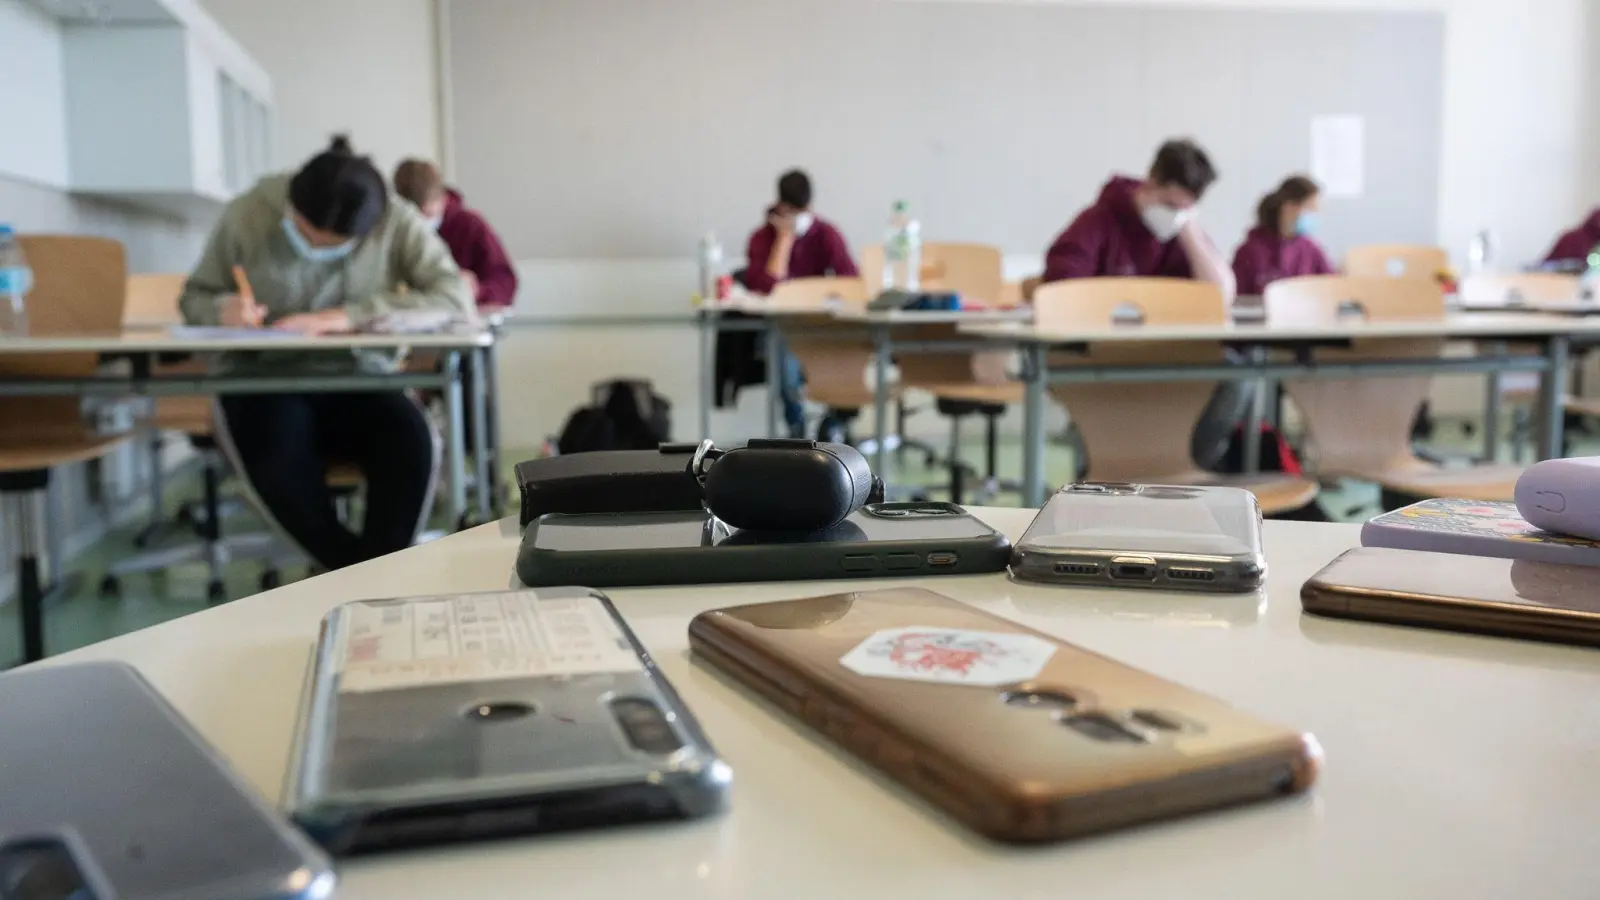 Ausgeschaltete Smartphones liegen am ersten Tag der Abiturprüfungen in einem Klassenzimmer. (Foto: Sebastian Gollnow/dpa/Archivbild)